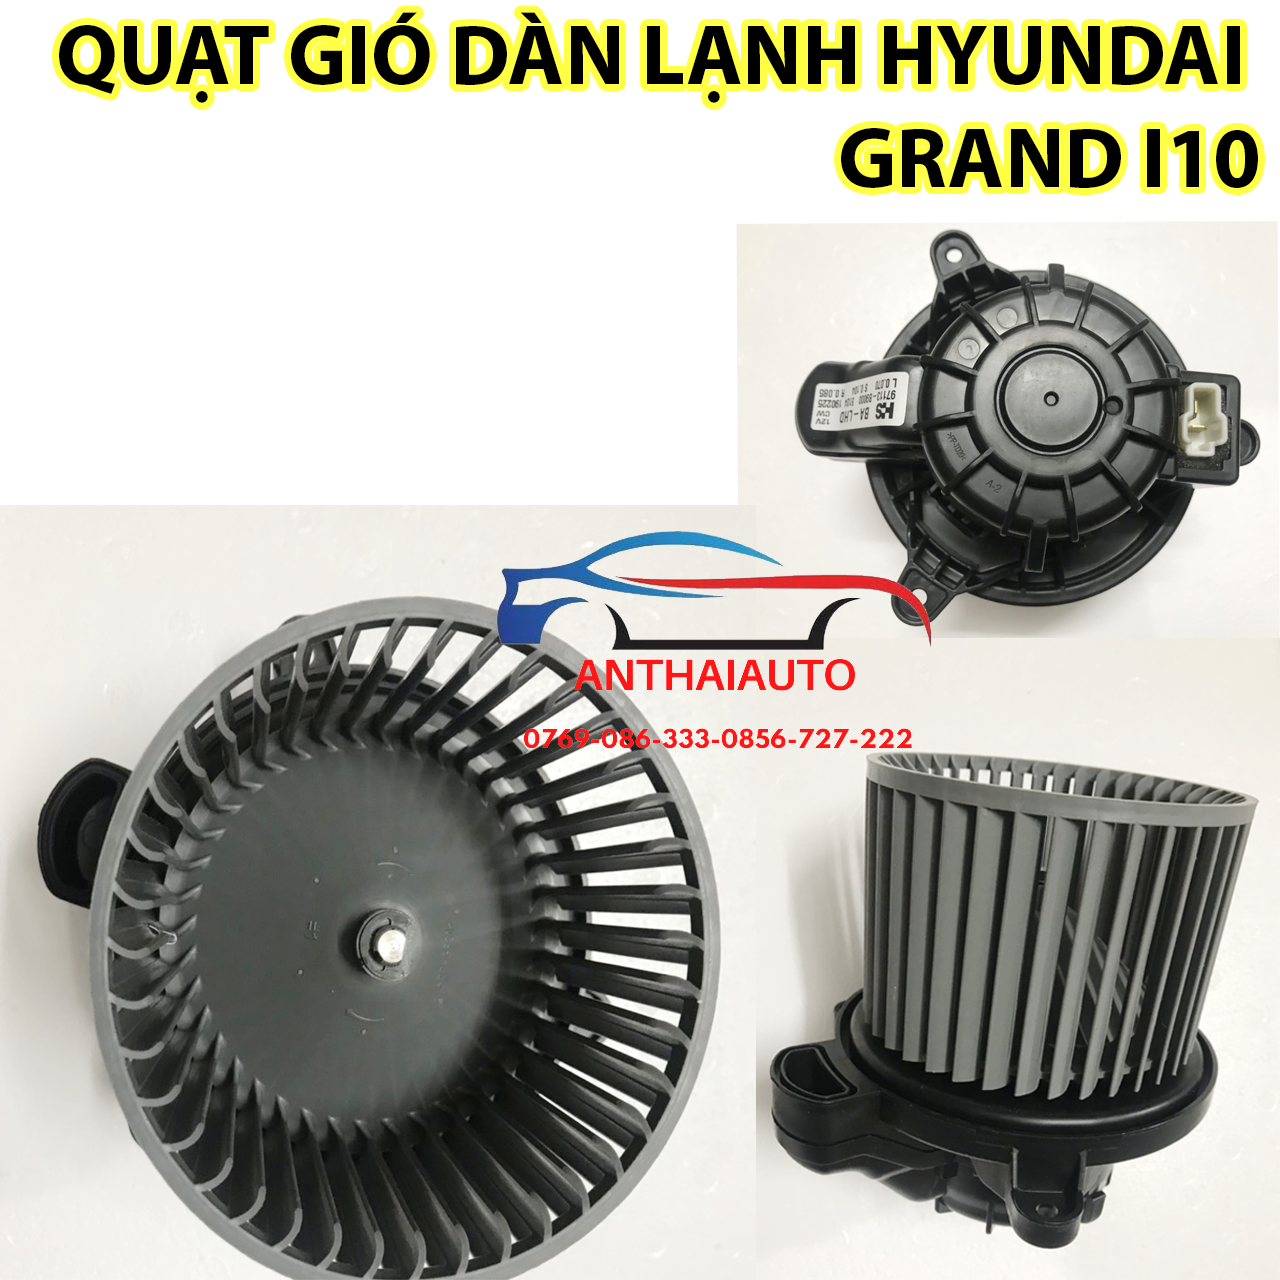 Hyundai Grand I10- Quạt gió dàn lạnh Hyundai Grand i10 Hanon korean hỗ trợ